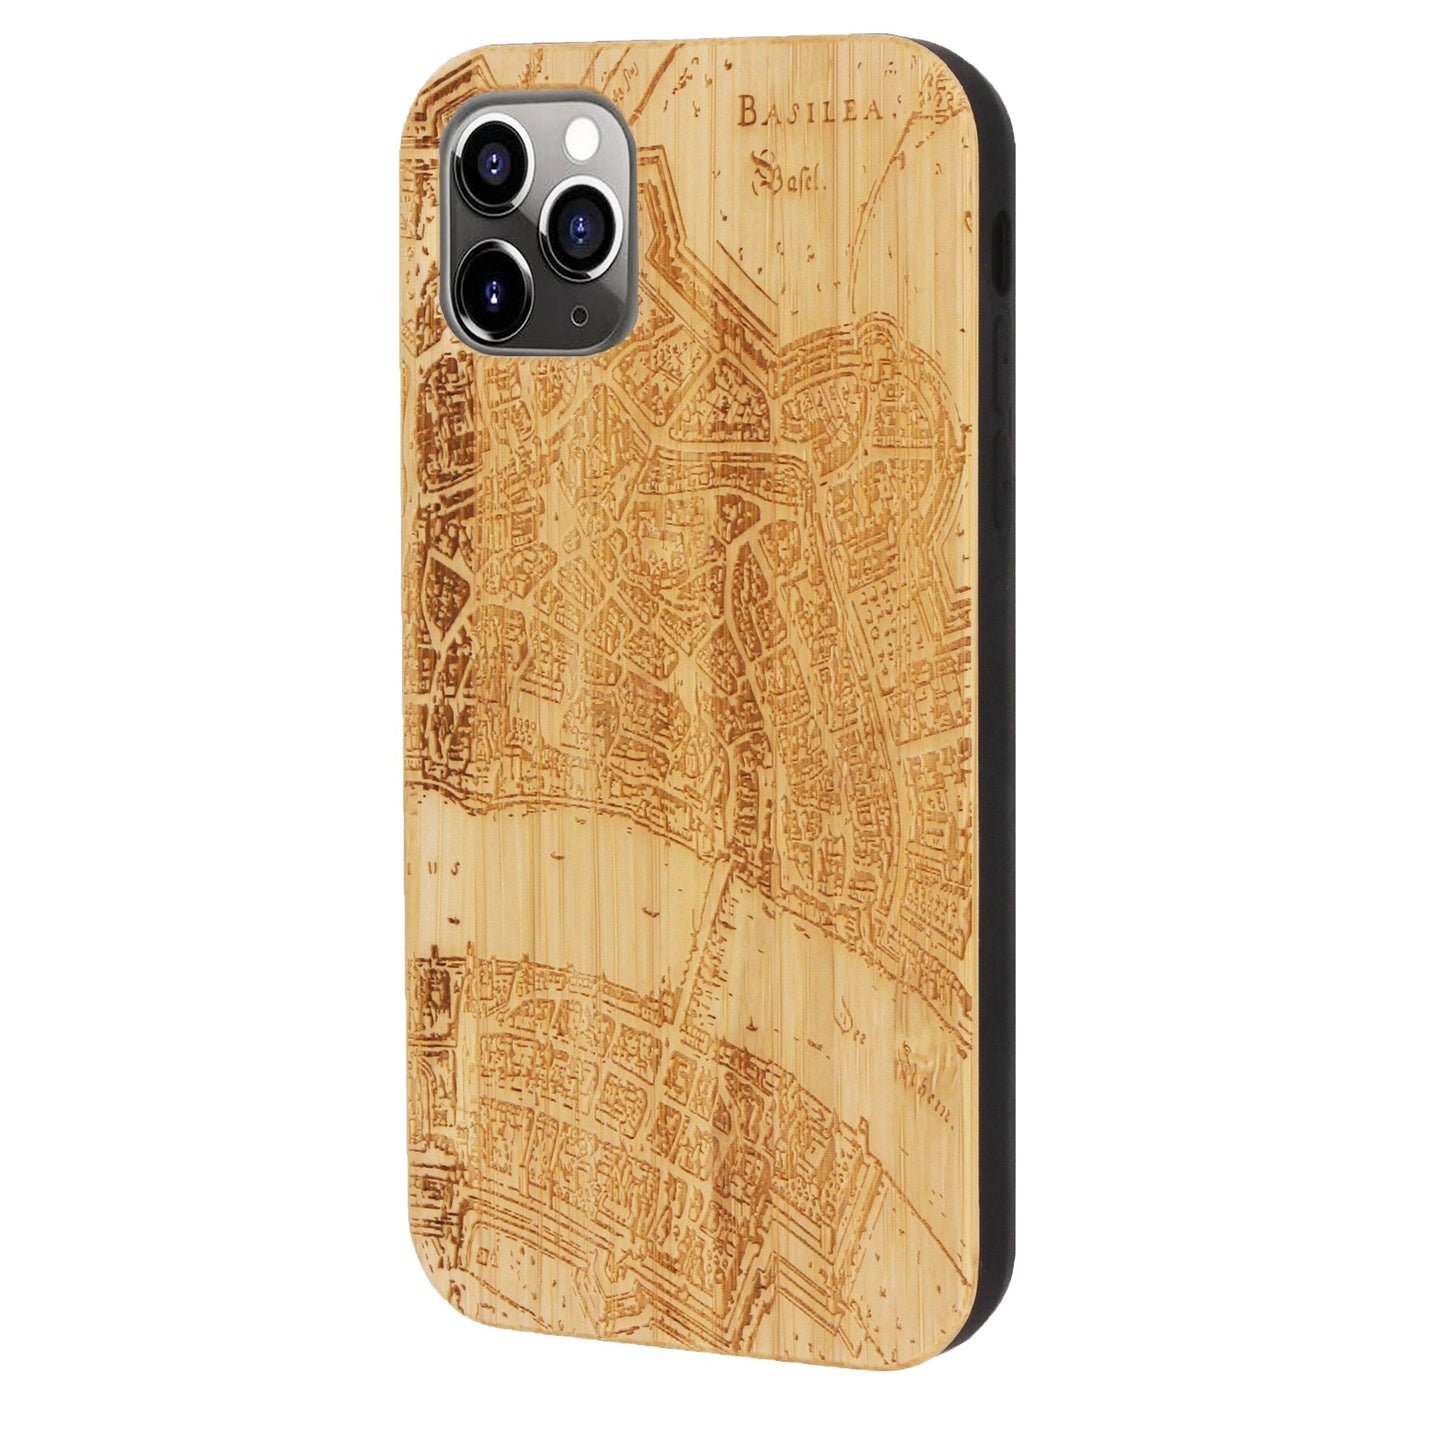 Basel Merian Eden Case aus Bambus für iPhone 11 Pro Max